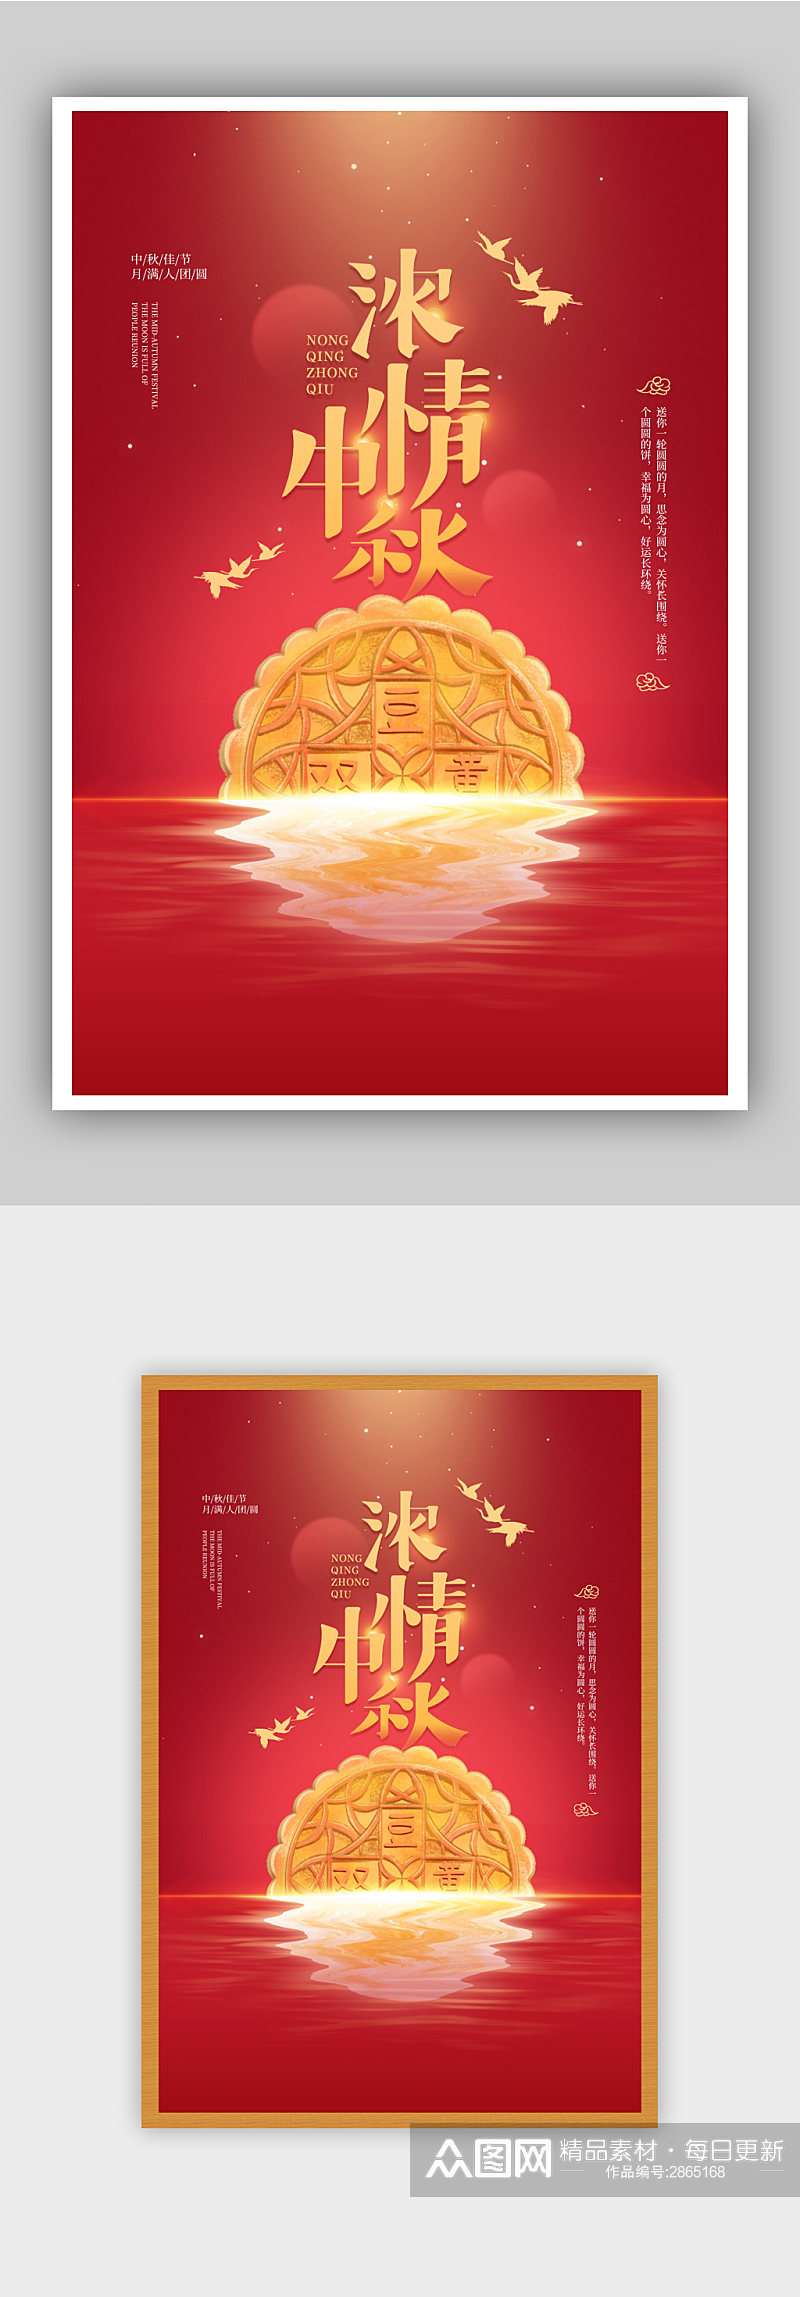 红色农历八月十五中秋节宣传海报素材